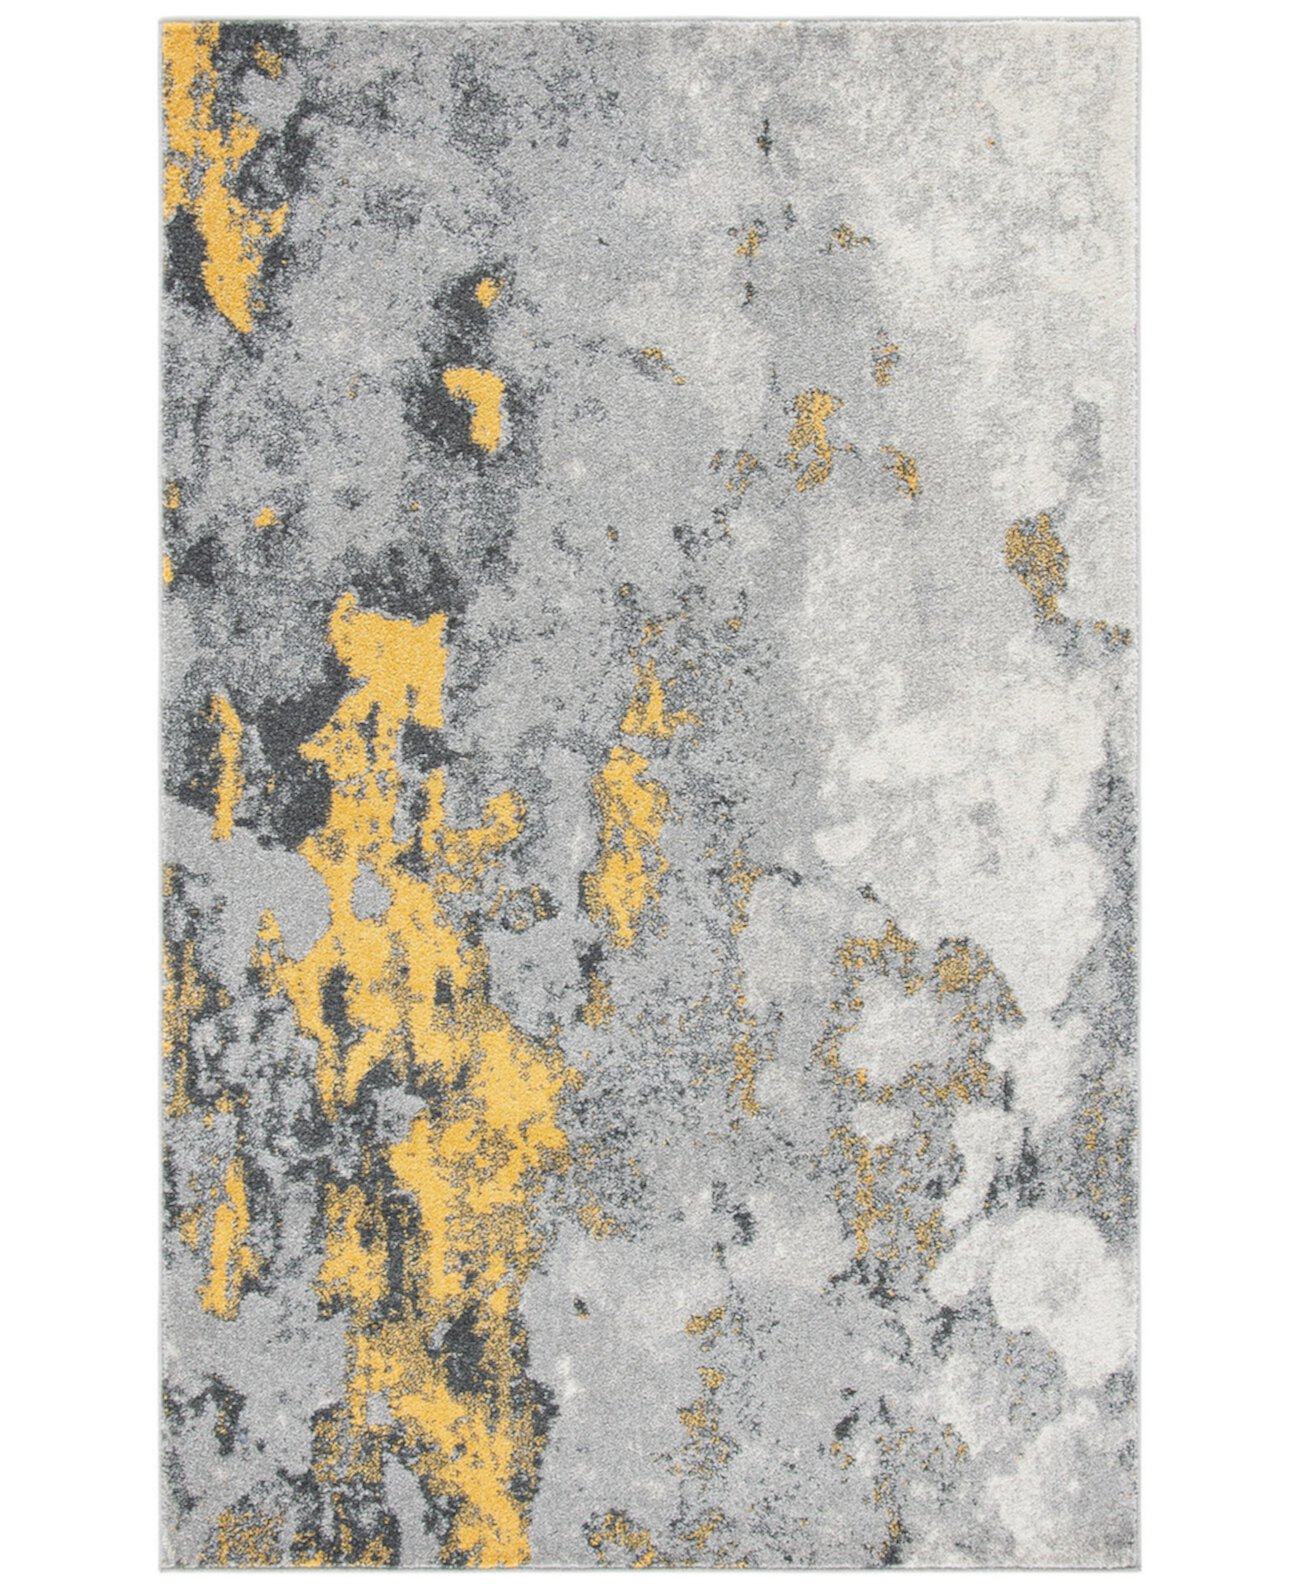 Адирондак Серый и Желтый Коврик размером 4 x 6 футов Safavieh